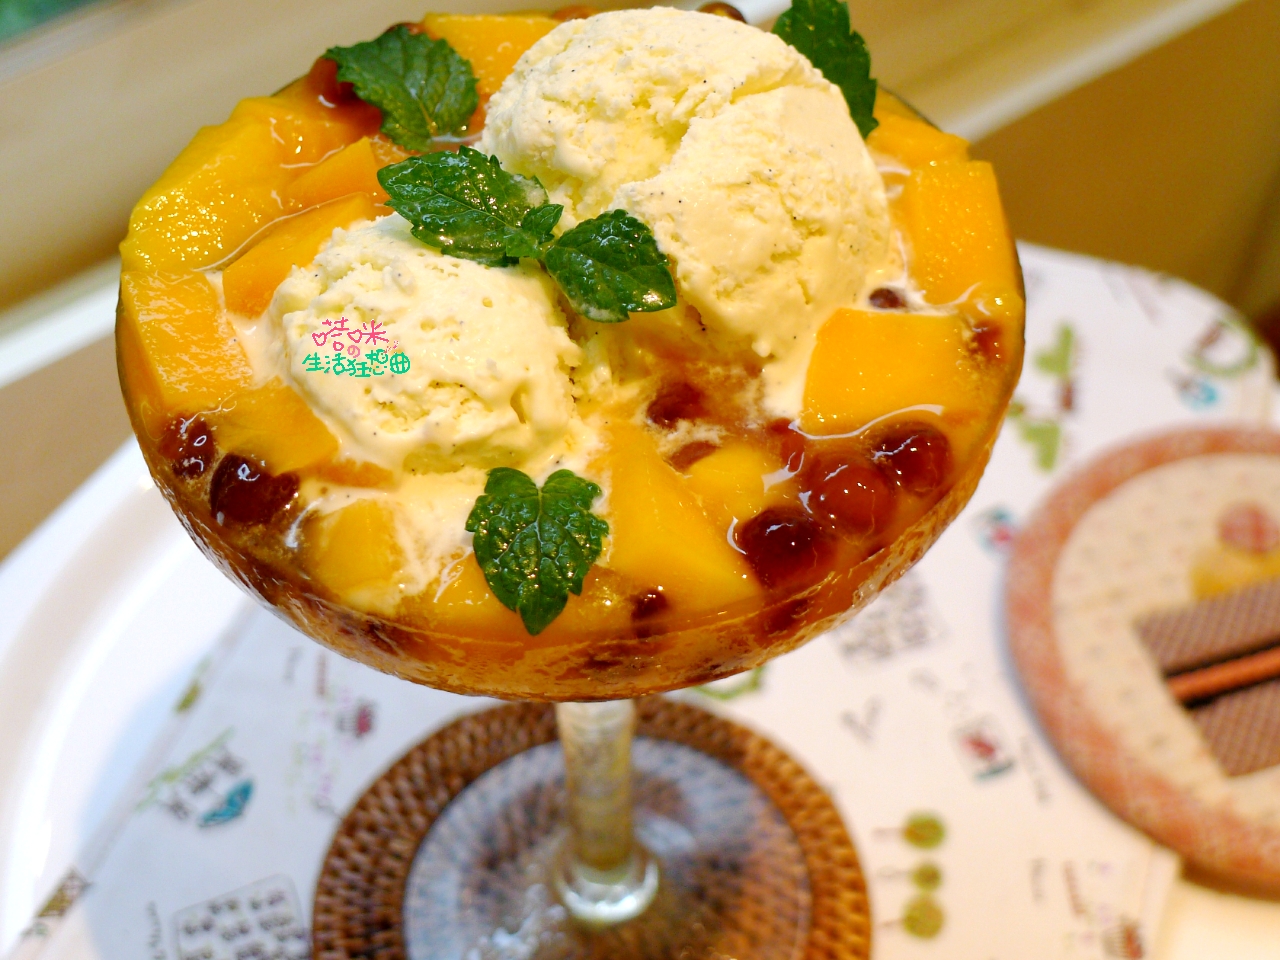 芒果冰淇淋 by 煮吃是七陶 - 愛料理